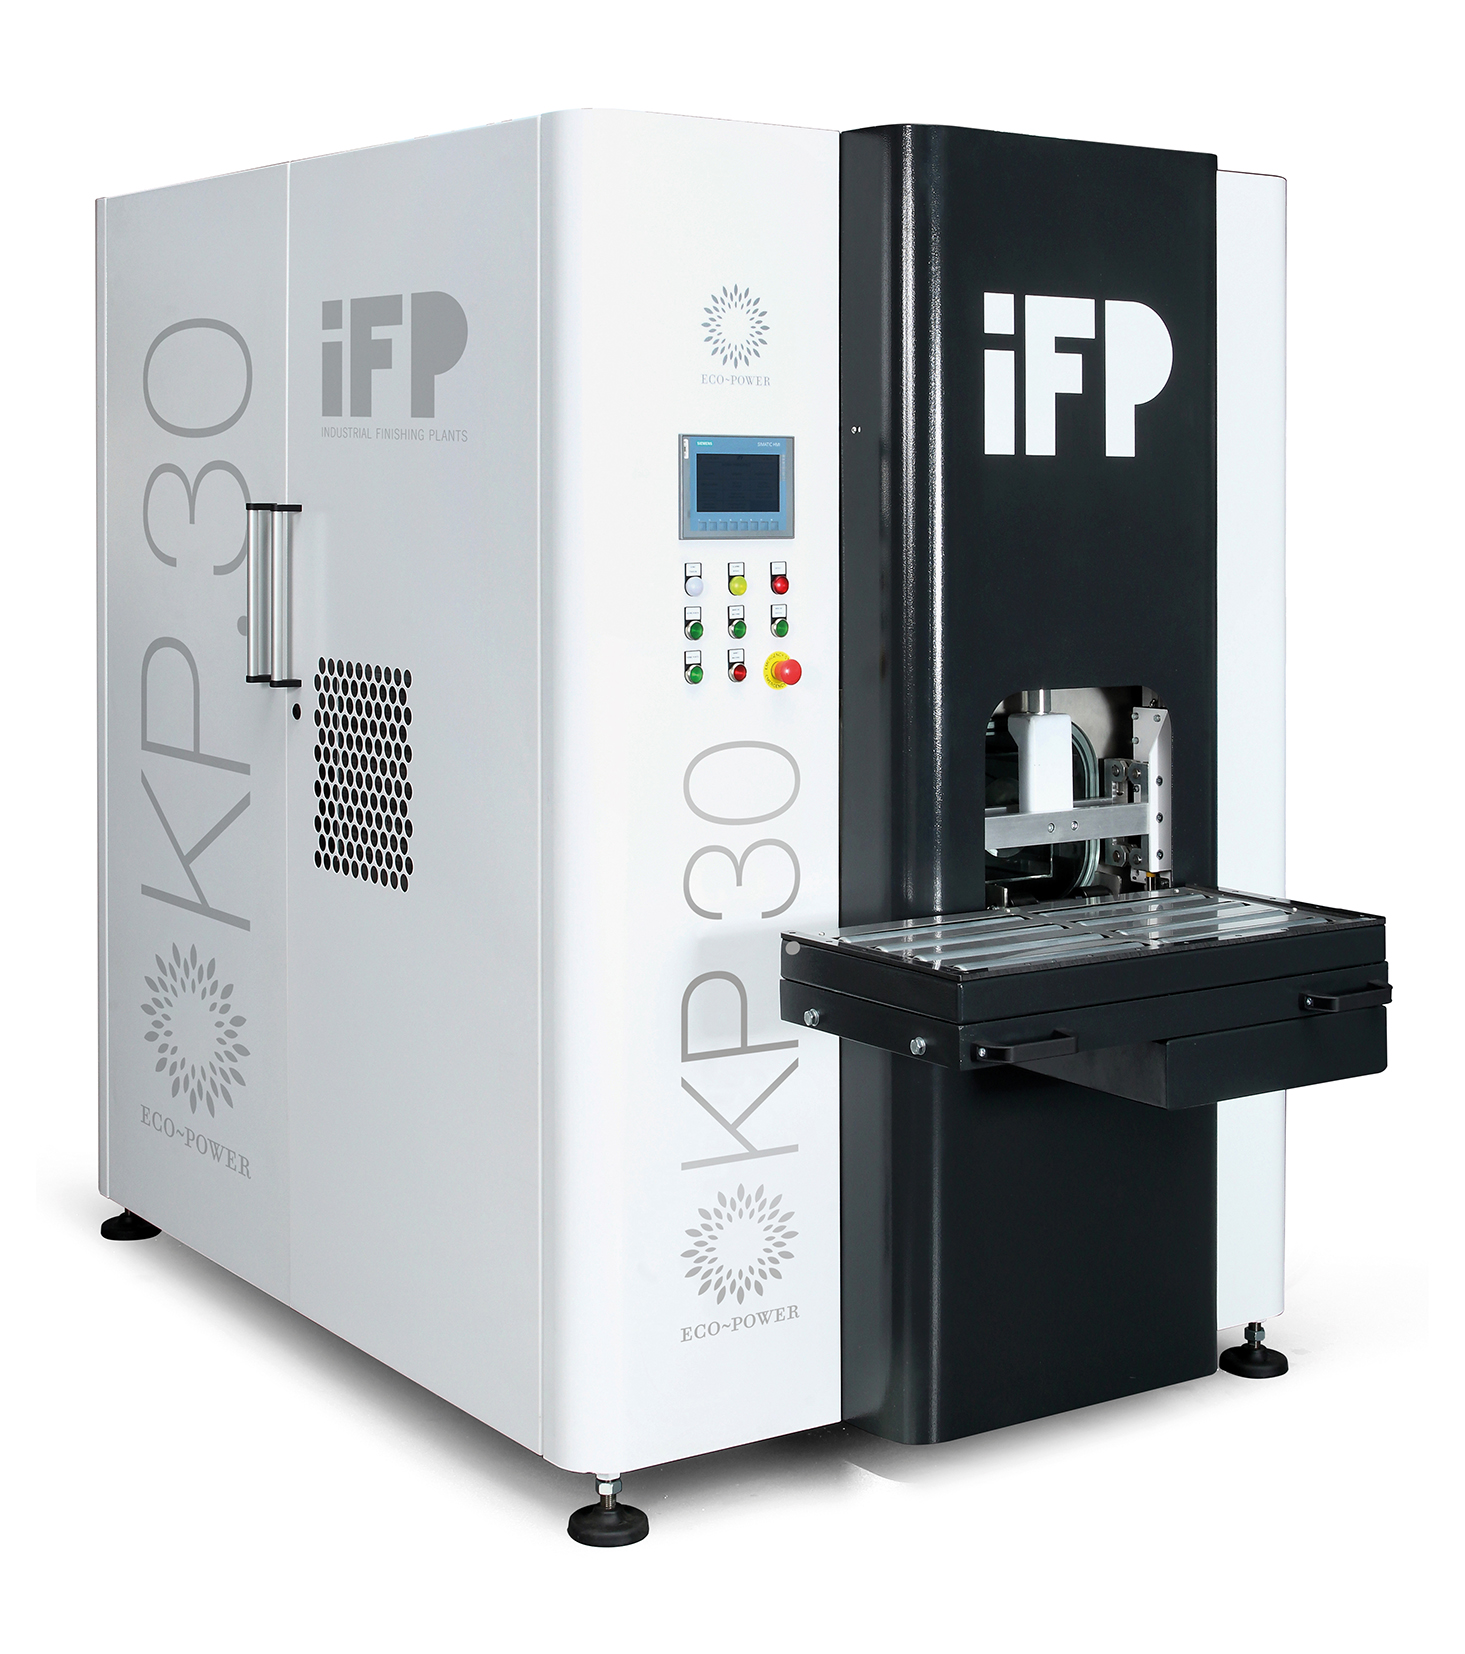 IFP Machine